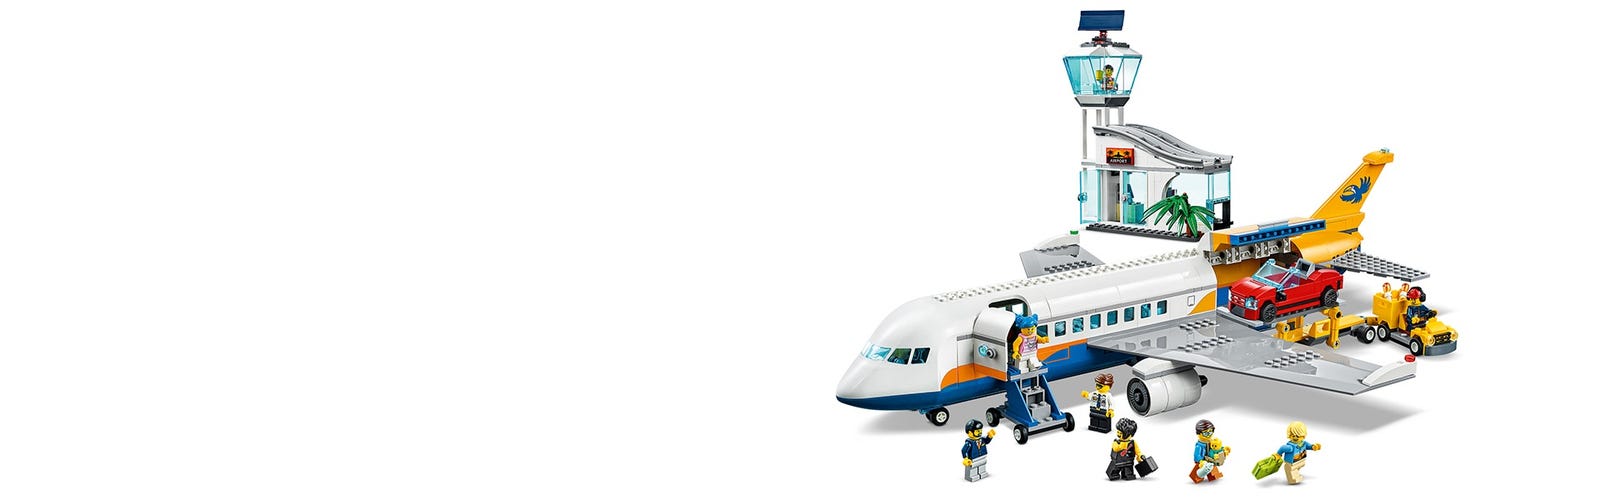 LEGO Aereo passeggeri